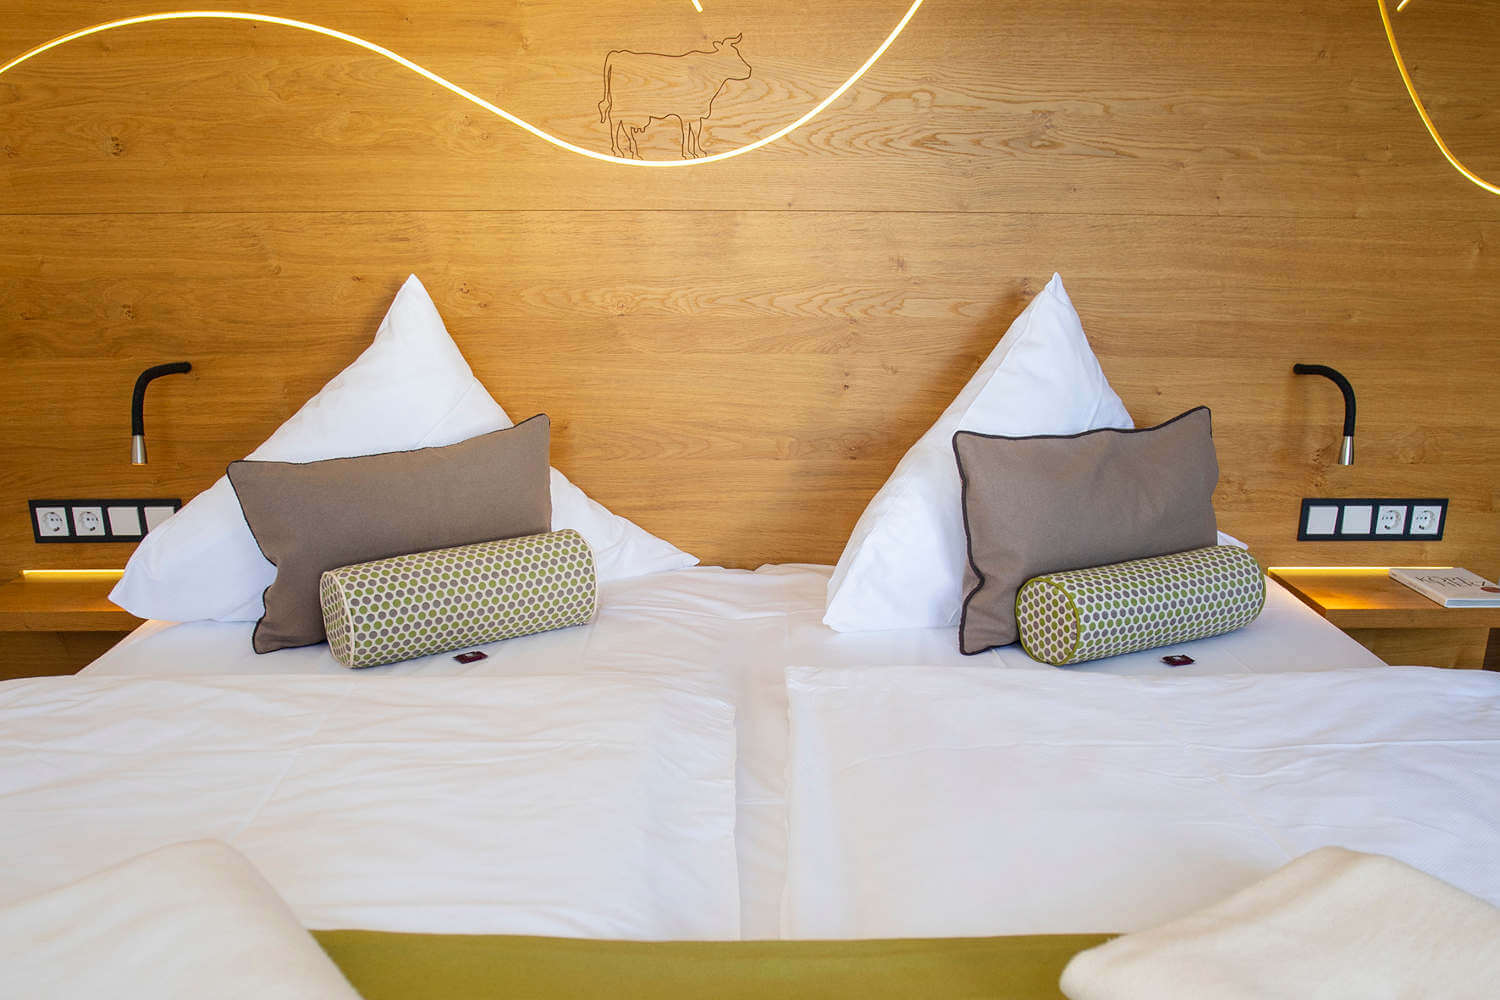 Blick auf den Kopfbereich des Betts im Doppelzimmer "Stammhaus Premium Plus Talseite" im DIEDRICH Wellnesshotel & SPA, Hallenberg in NRW